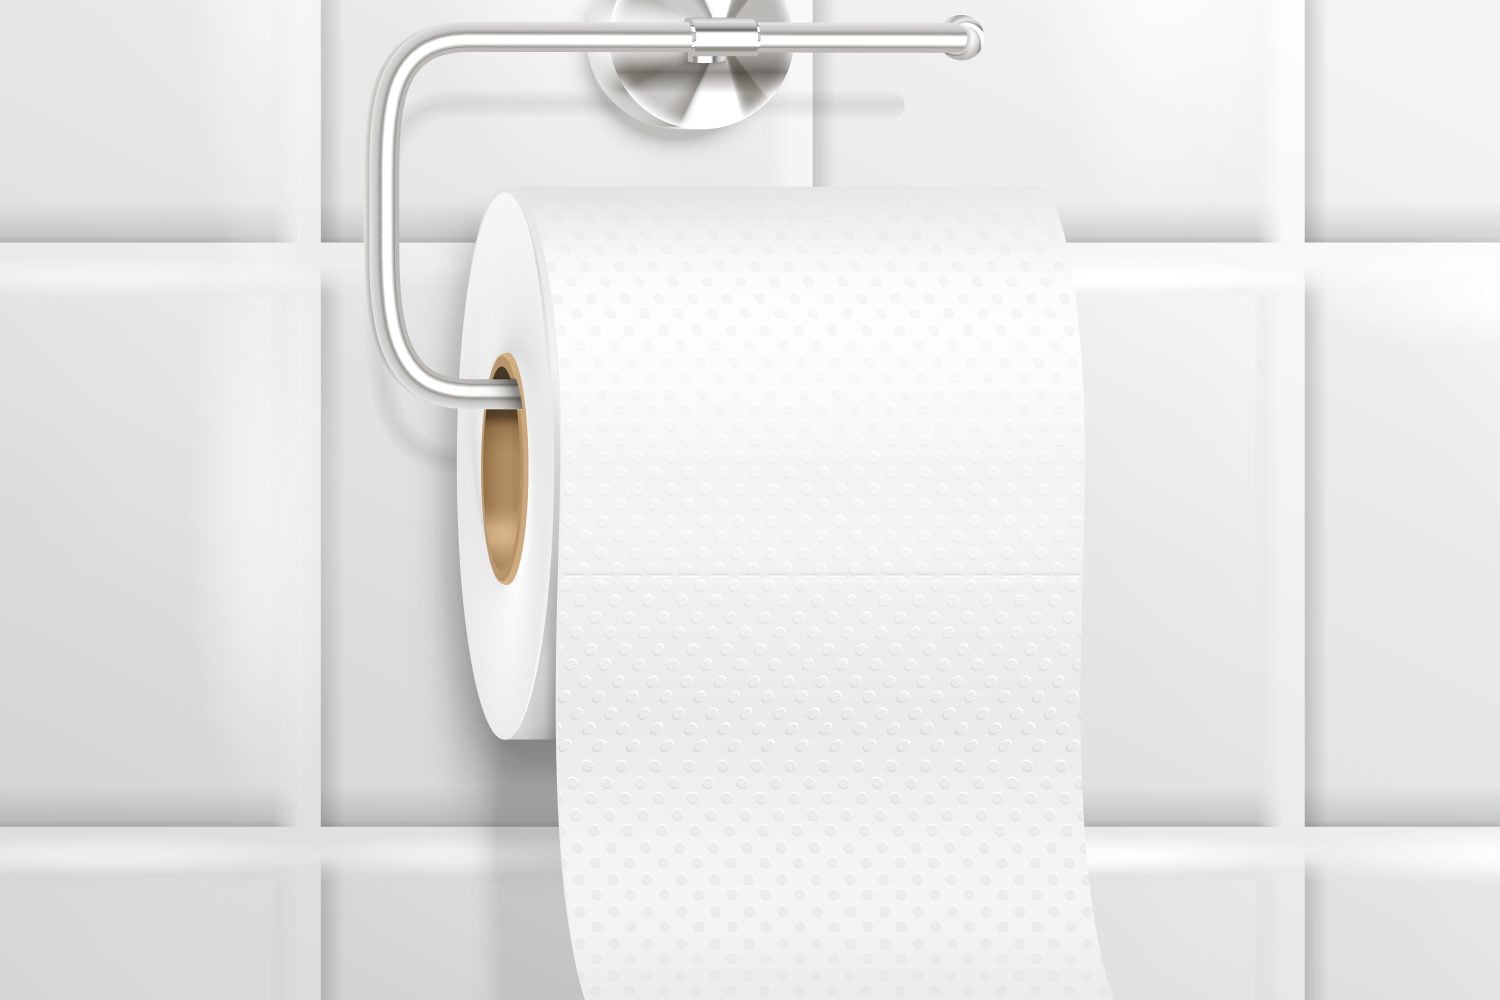 Papier Toilette